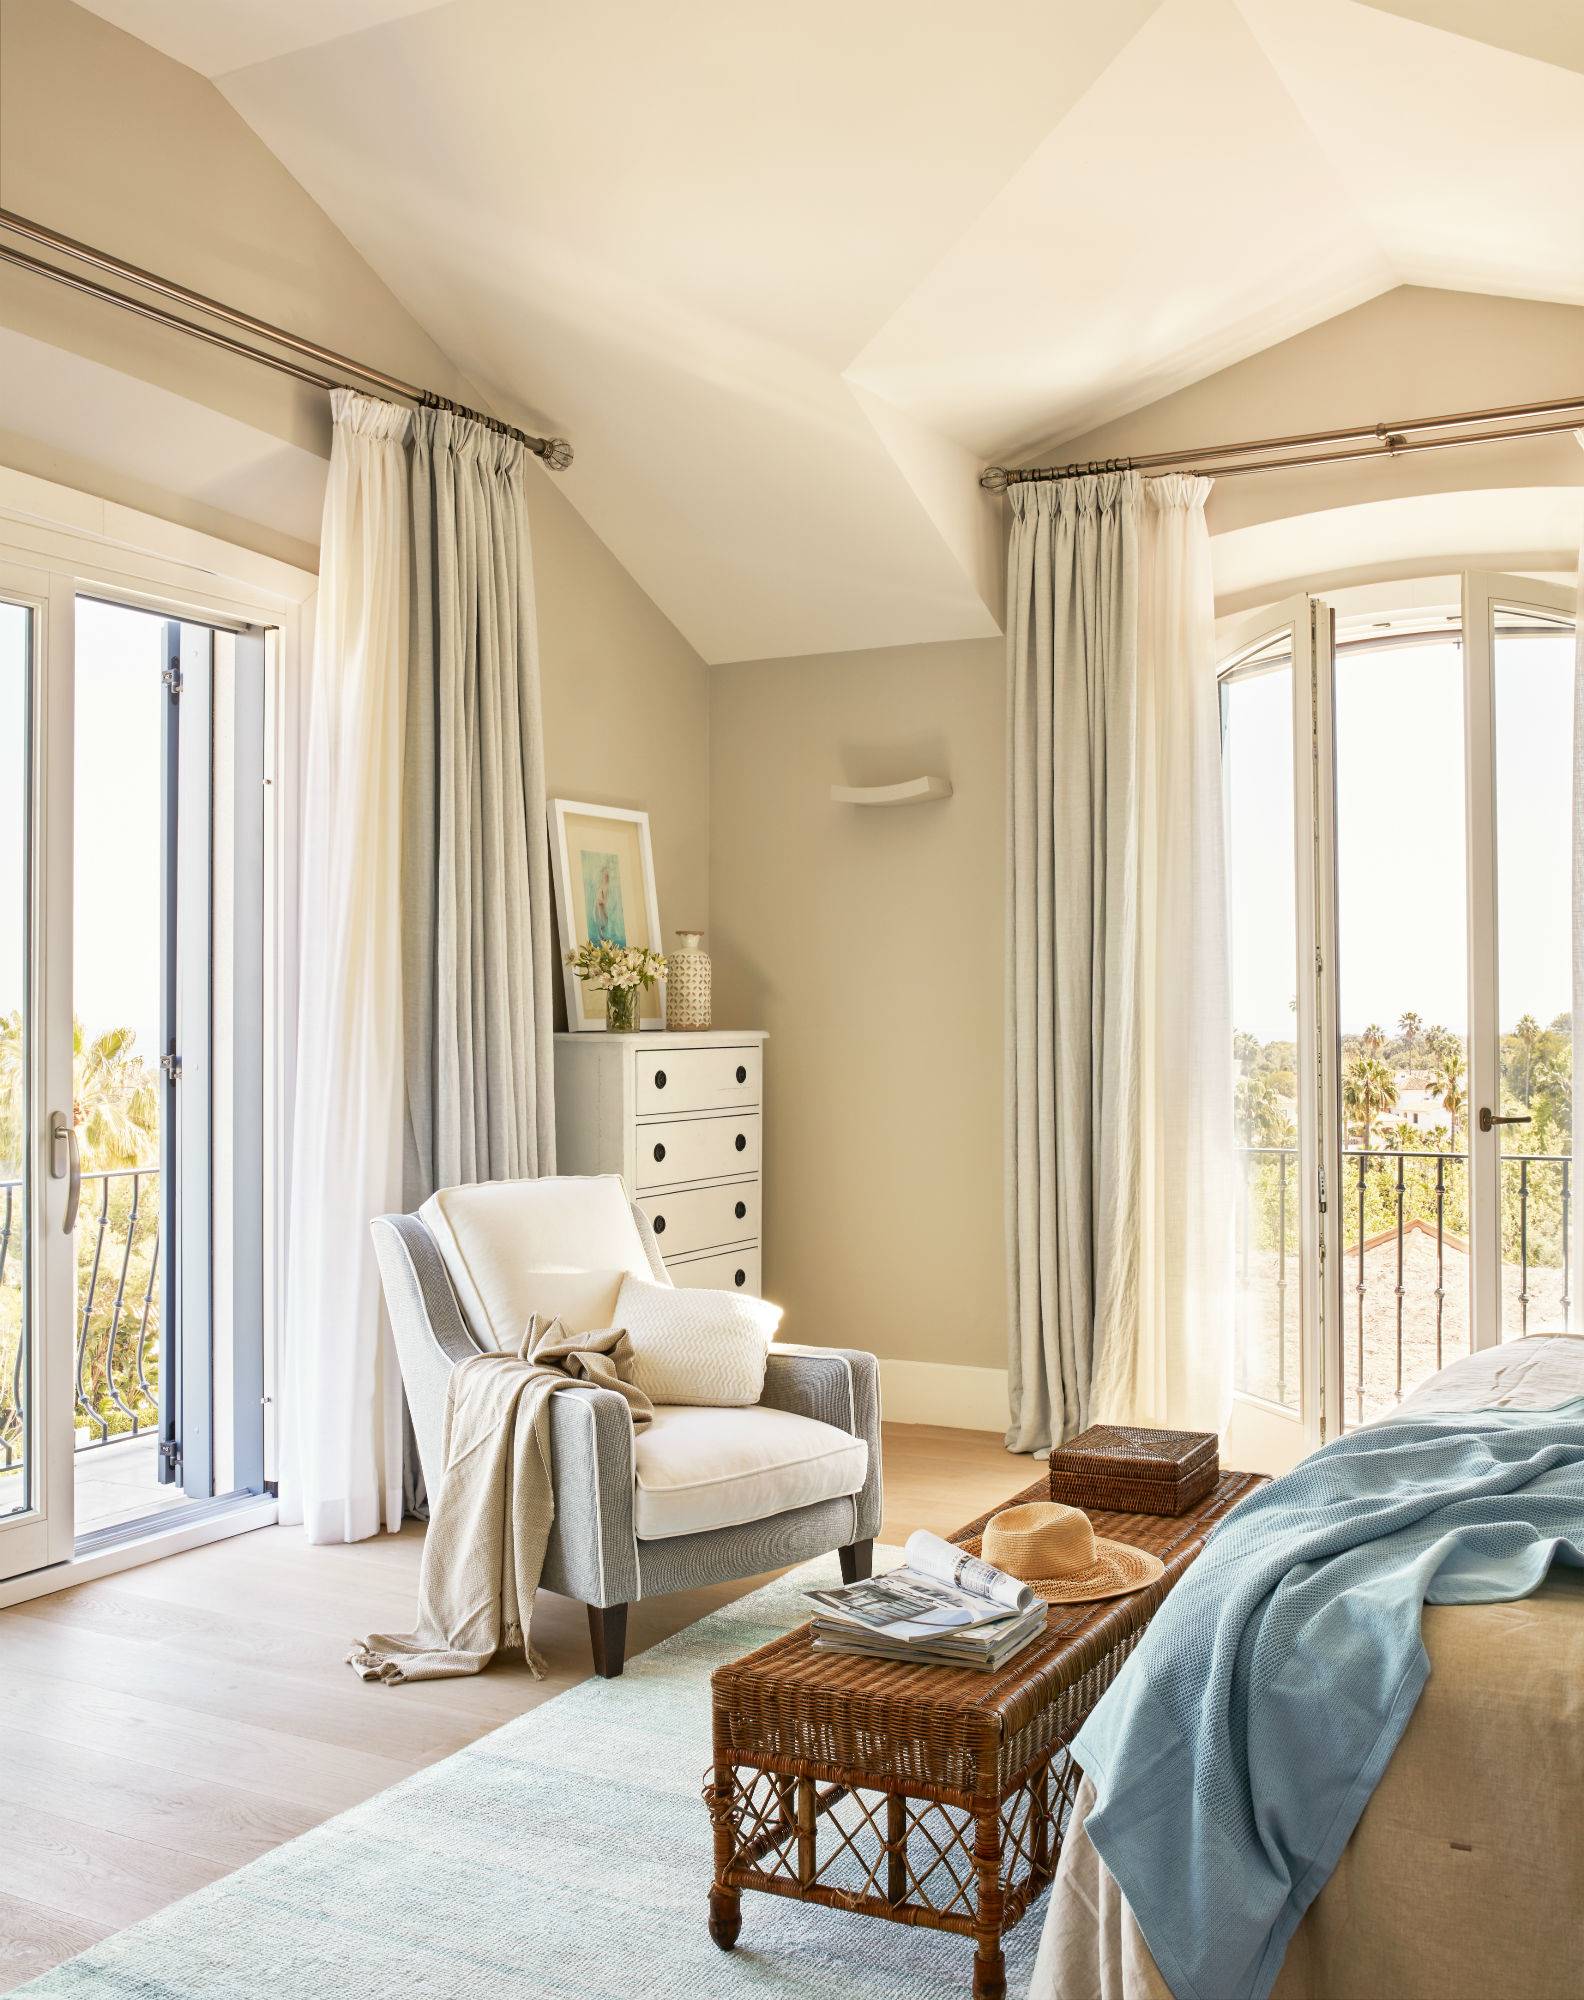 Dormitorio veraniego en Cádiz con muebles clásicos y detalles de fibras naturales.